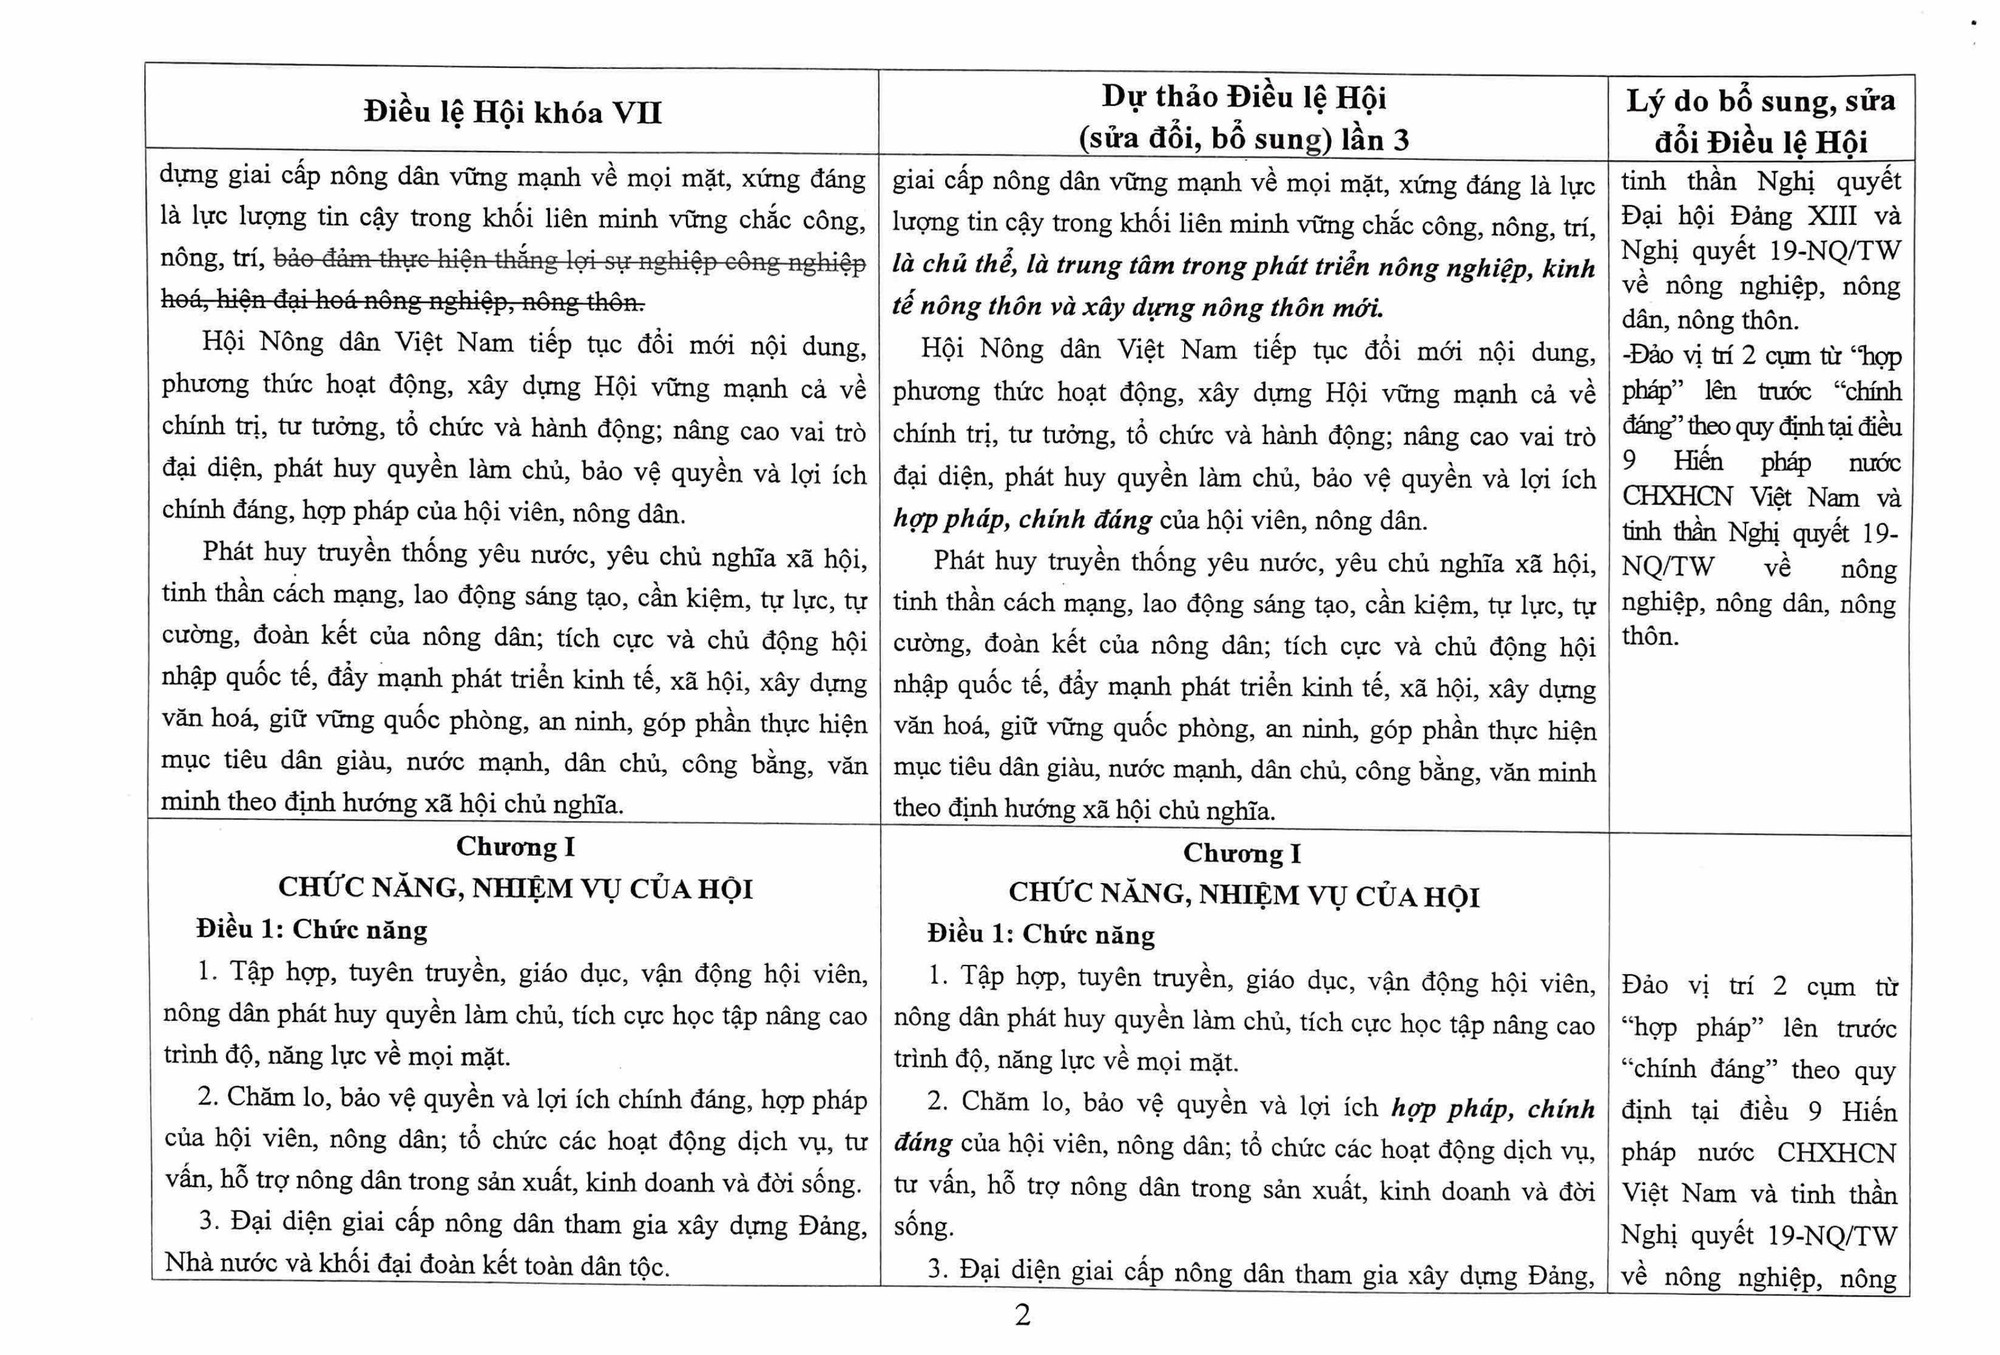 Toàn văn Dự thảo Điều lệ Hội Nông dân Việt Nam sửa đổi, bổ sung - Ảnh 2.